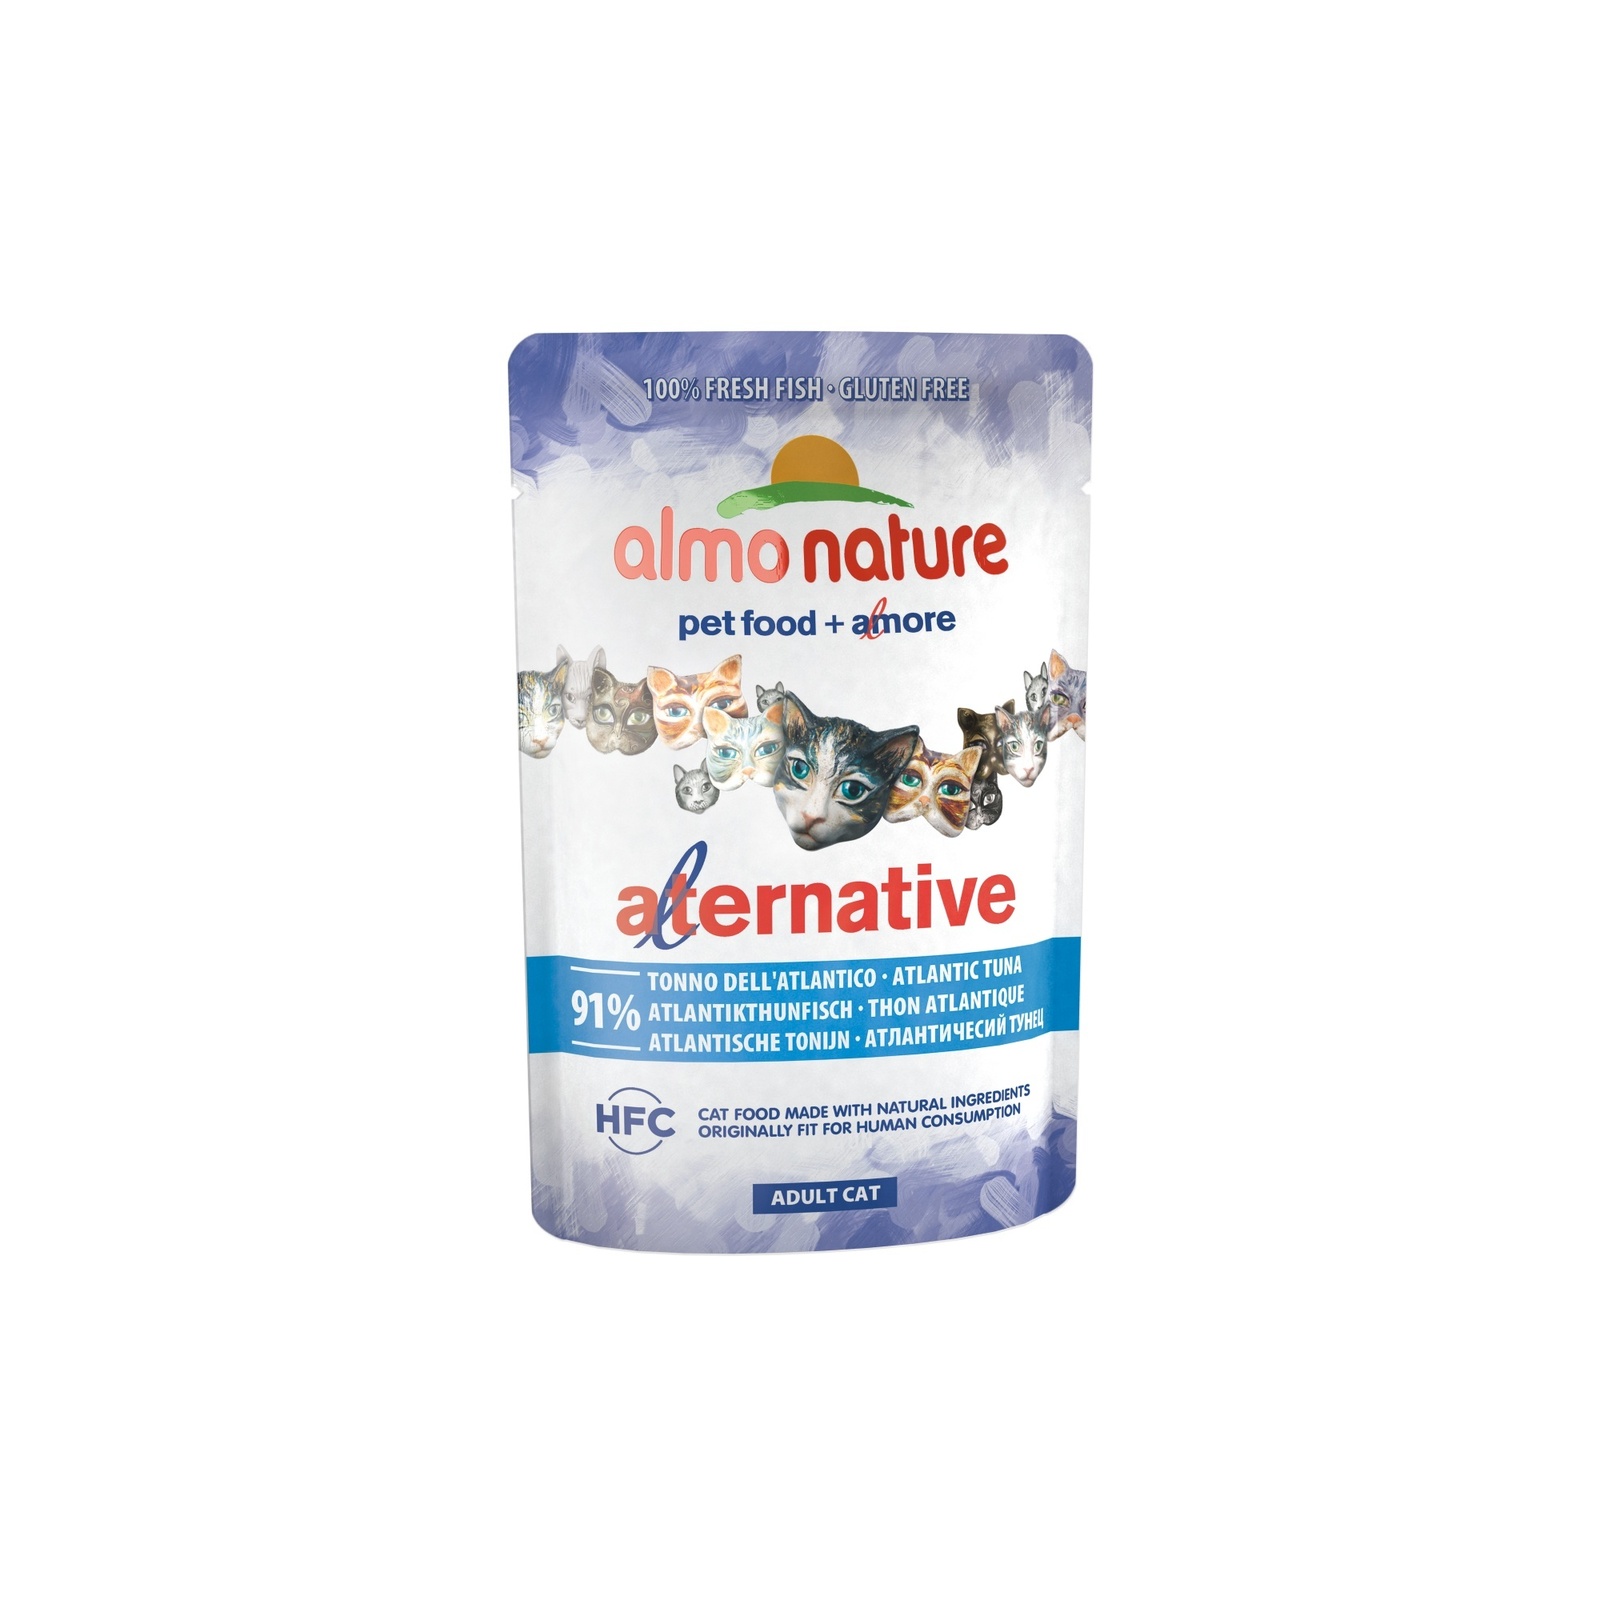 Almo Nature консервы паучи для кошек "Атлантический тунец" 91% мяса (55 г)